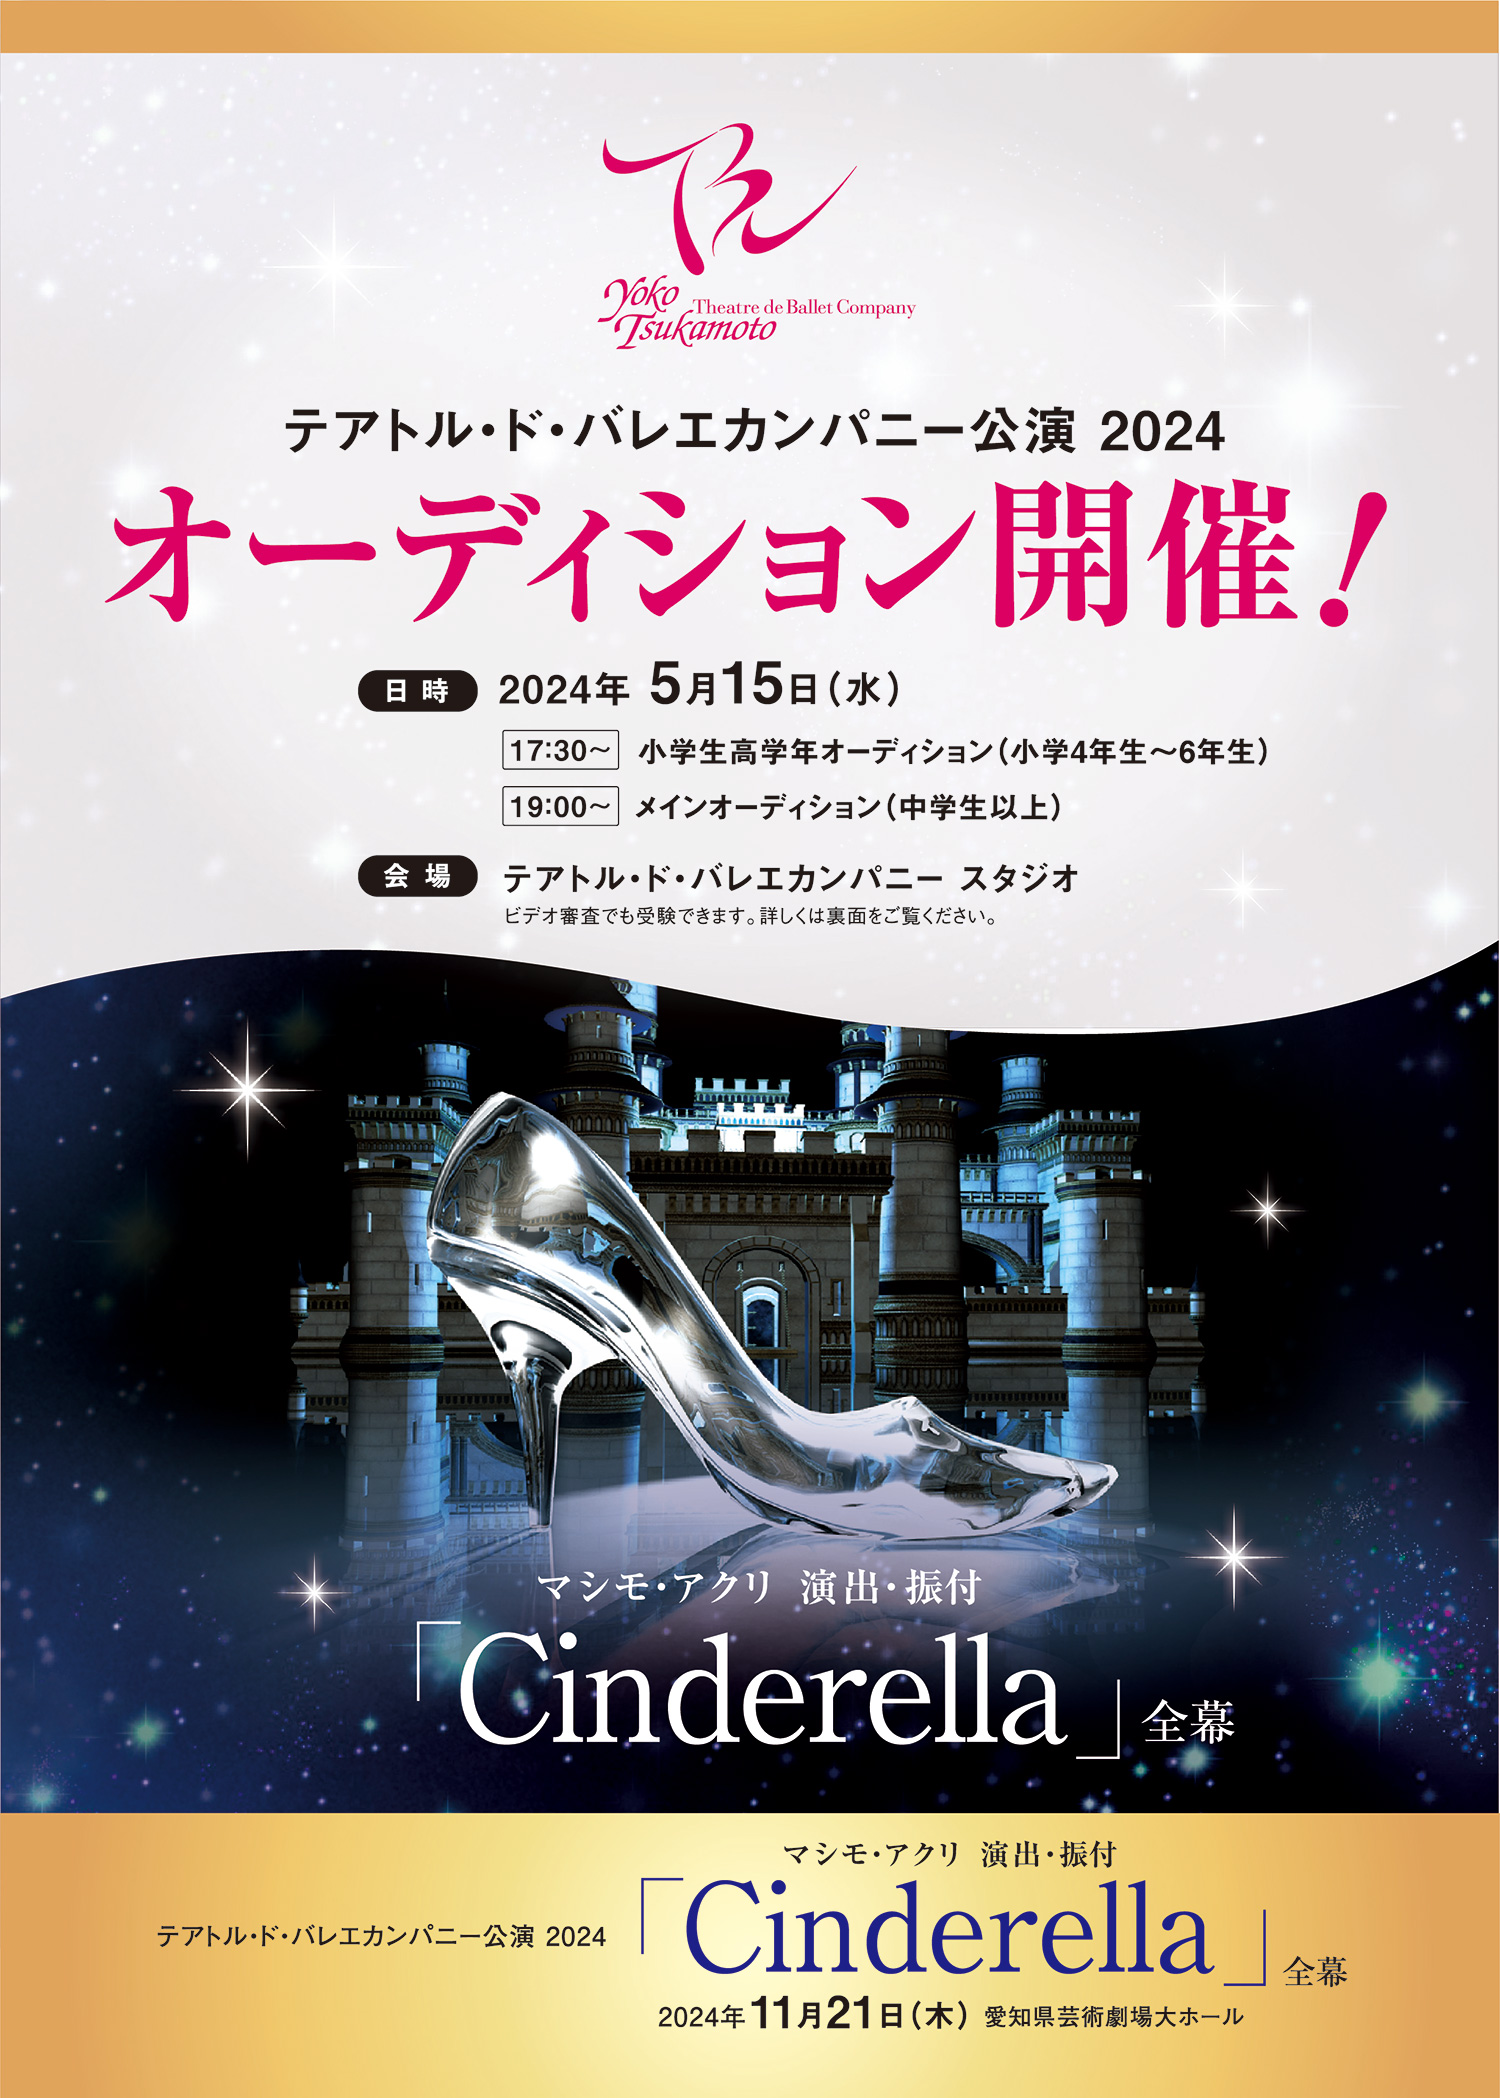 テアトル・ド・バレエ カンパニー公演 2024 Cinderella